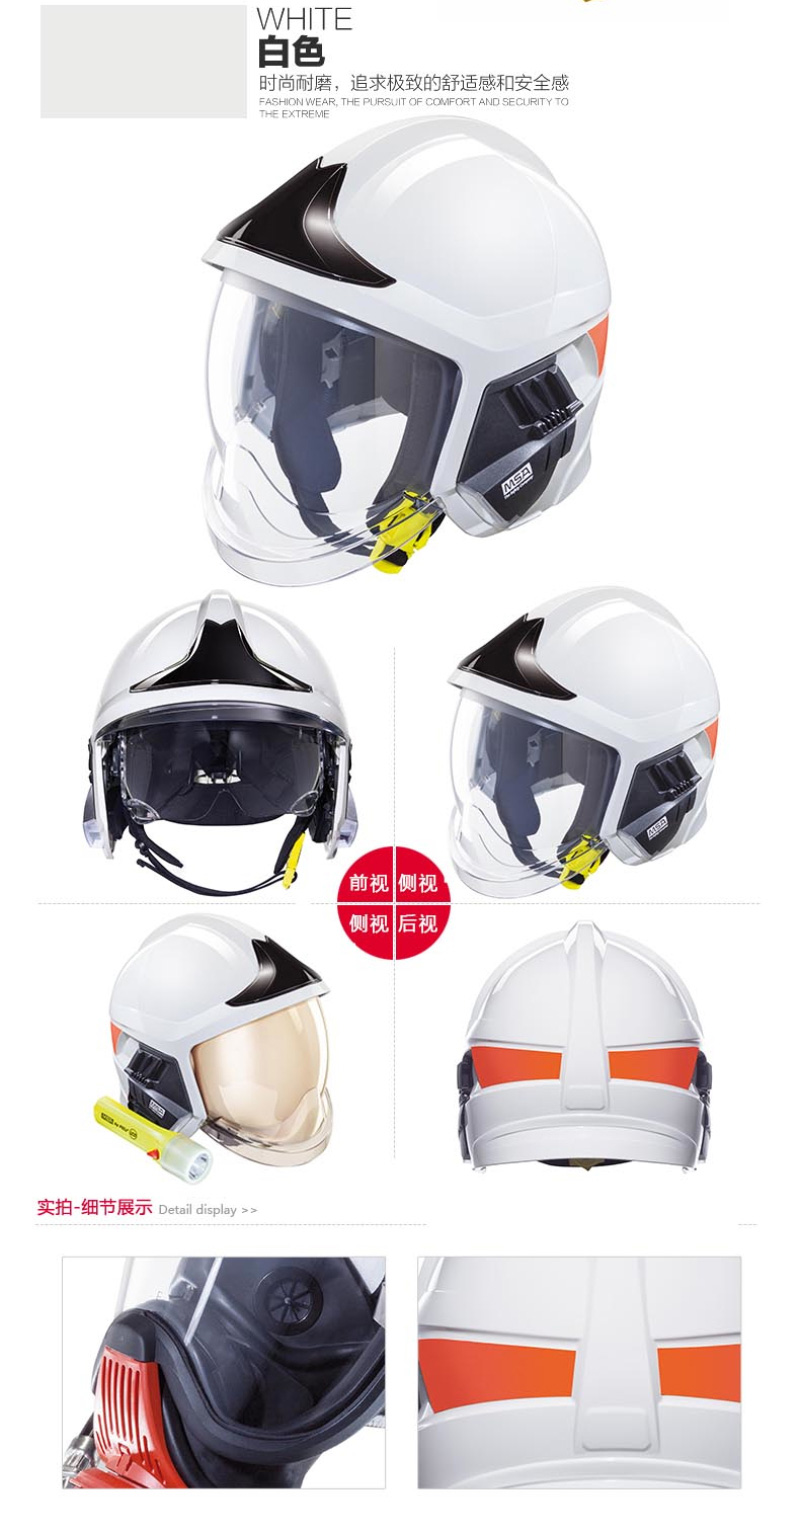 梅思安10158876 消防头盔 F1XF 大号 白色 带照明模组